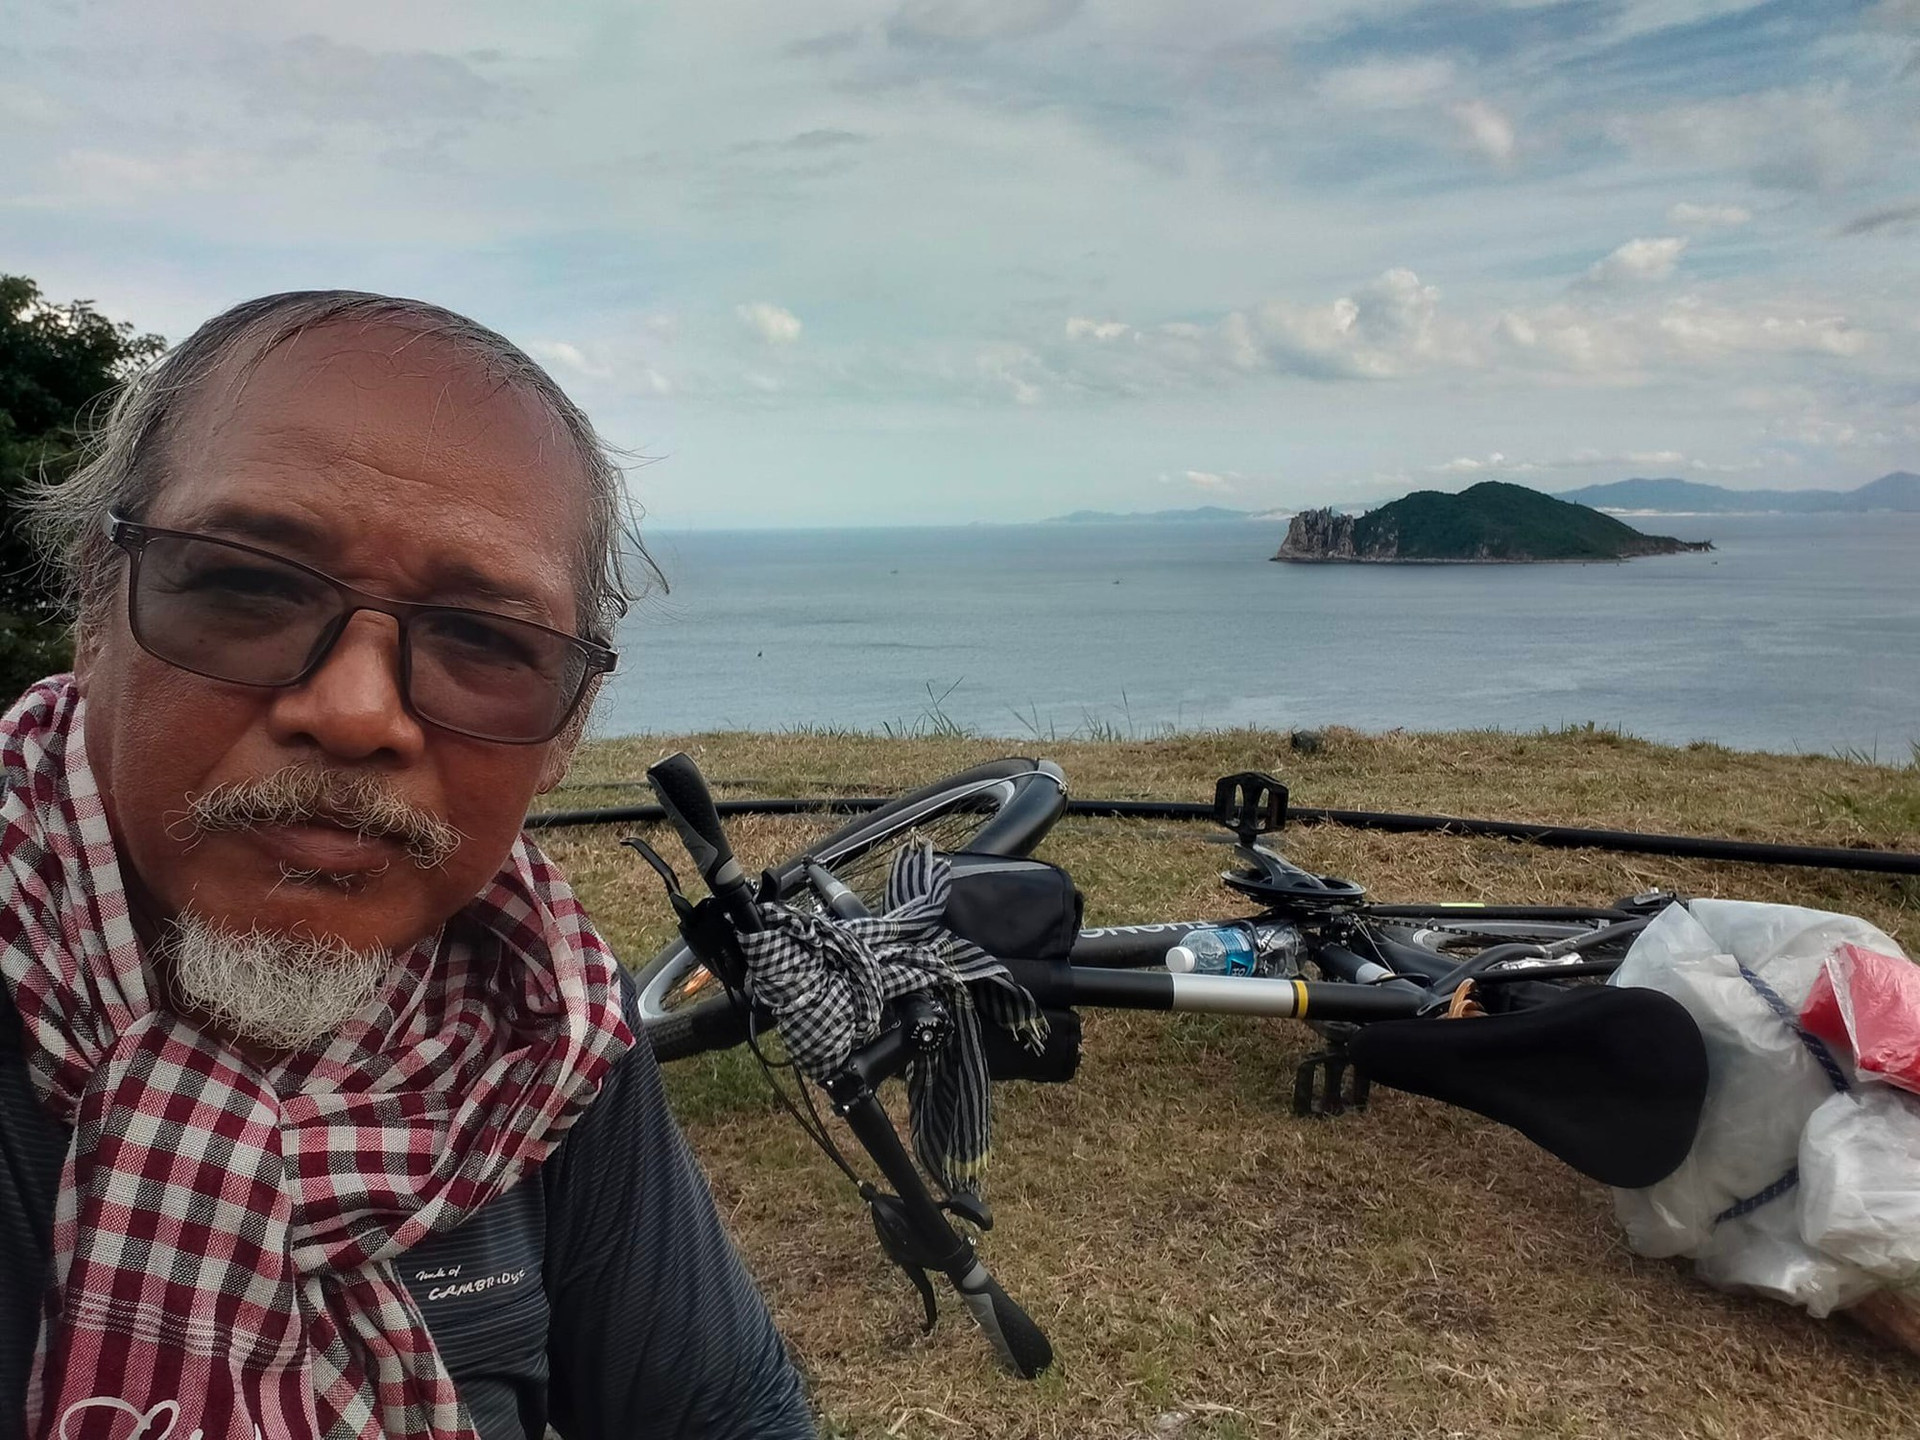 Nhà du khảo 61 tuổi một mình đạp xe 1.800km từ Bắc vào Nam: 'Đi để thấy Việt Nam mình tươi đẹp' - Ảnh 3.